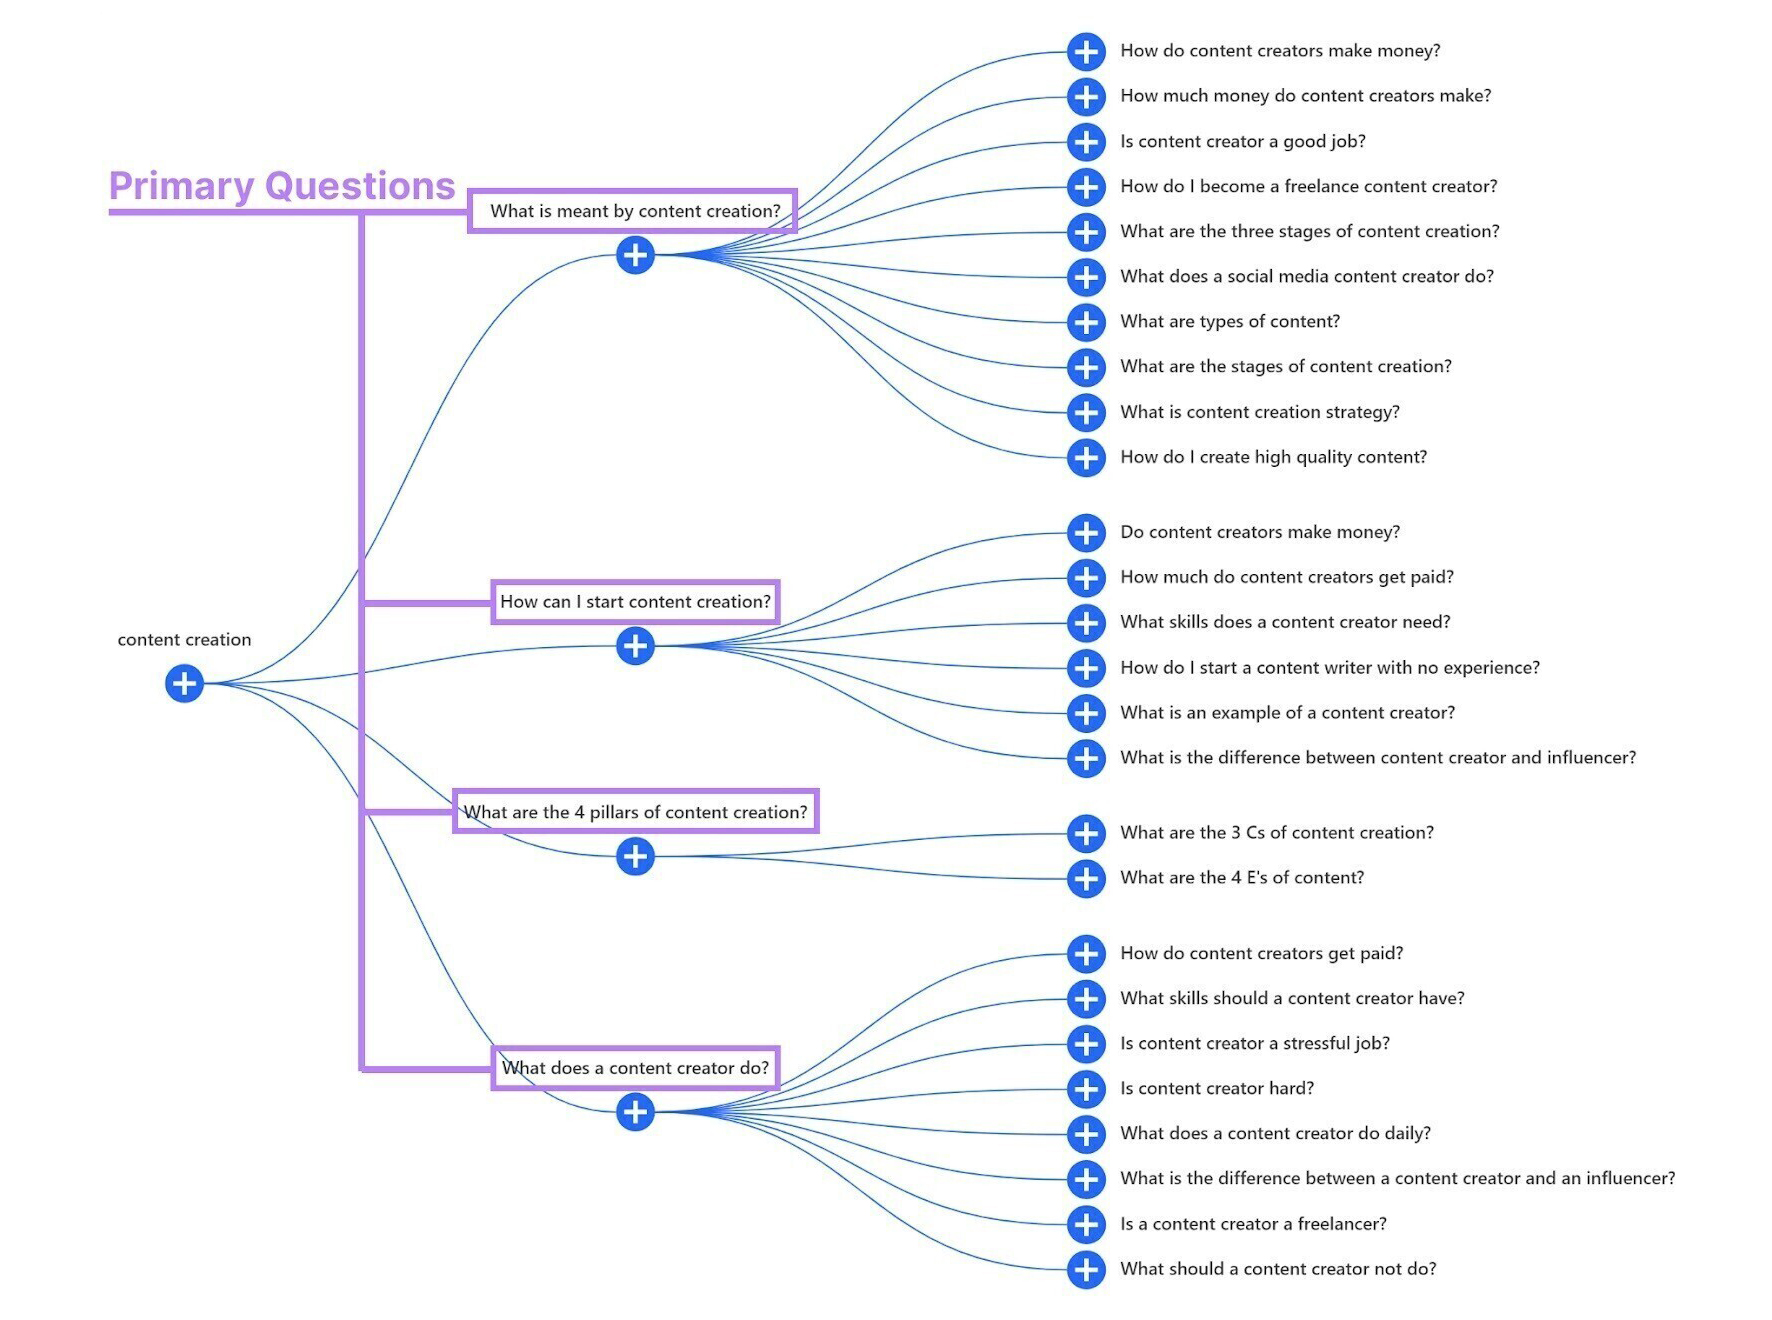 приклад діаграми розгалуження для пошуку «content creation» у США 